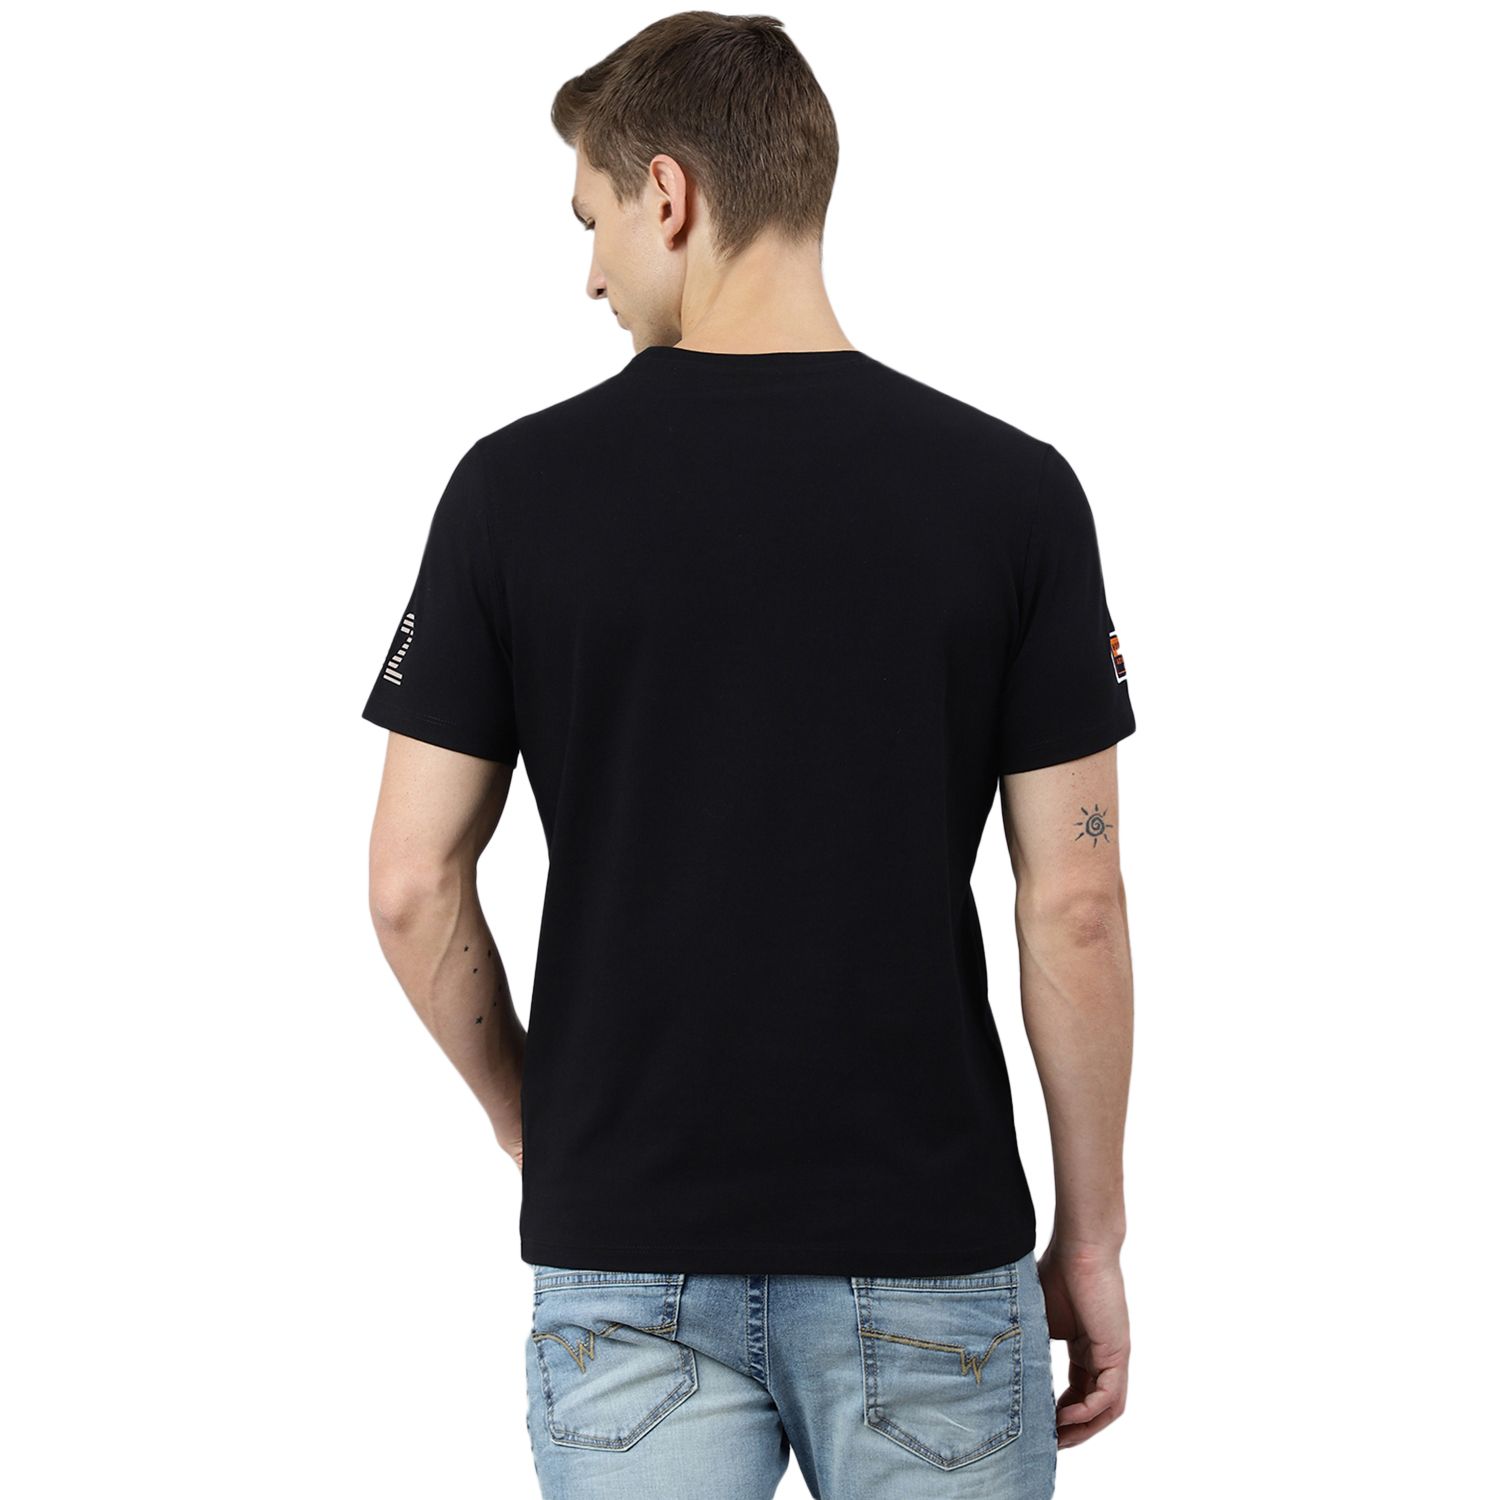 Black T-shirt for men